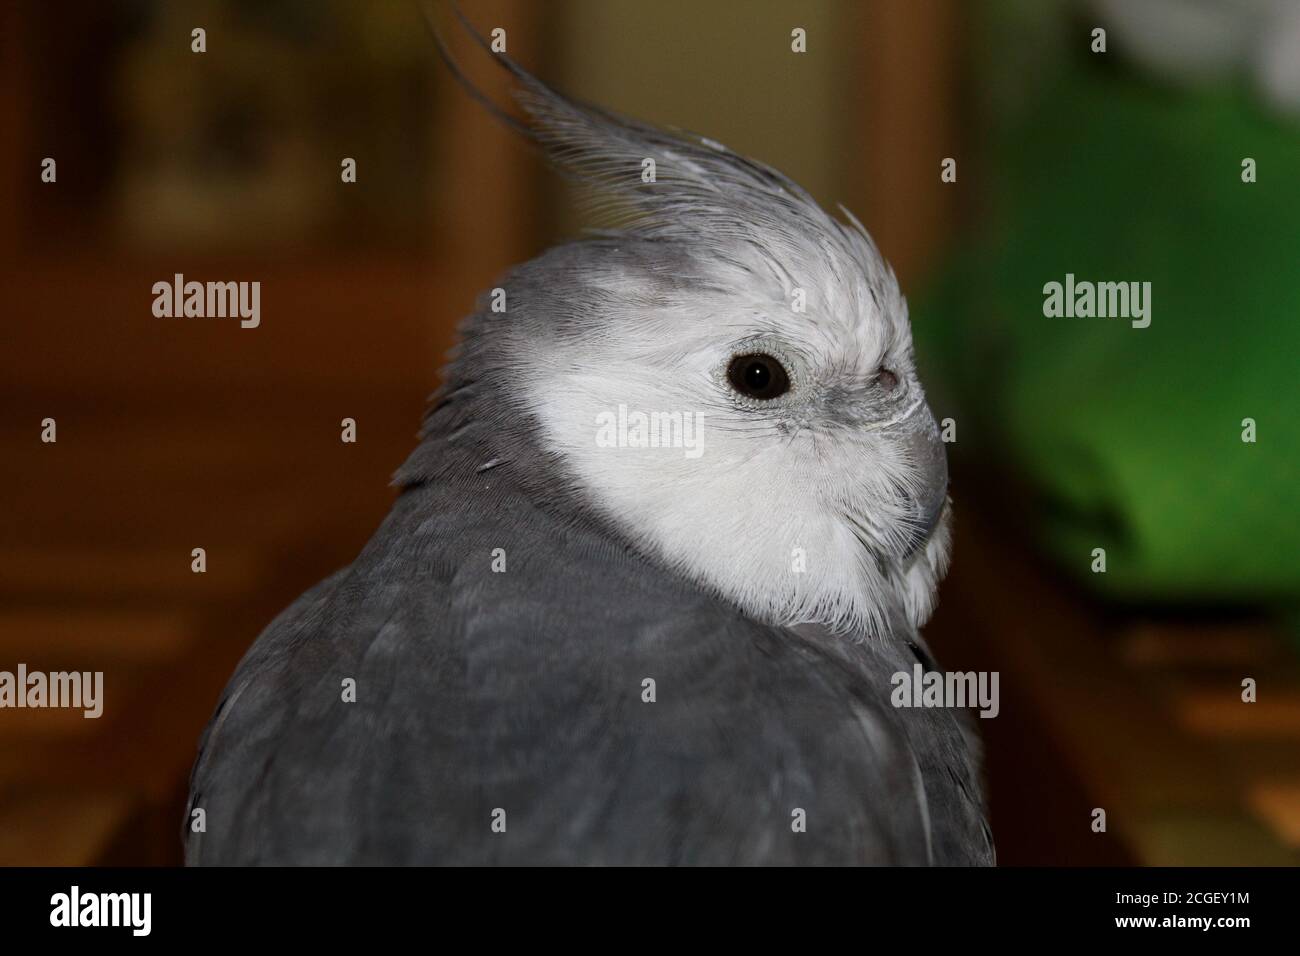 Close-up of a bird Stock Photo